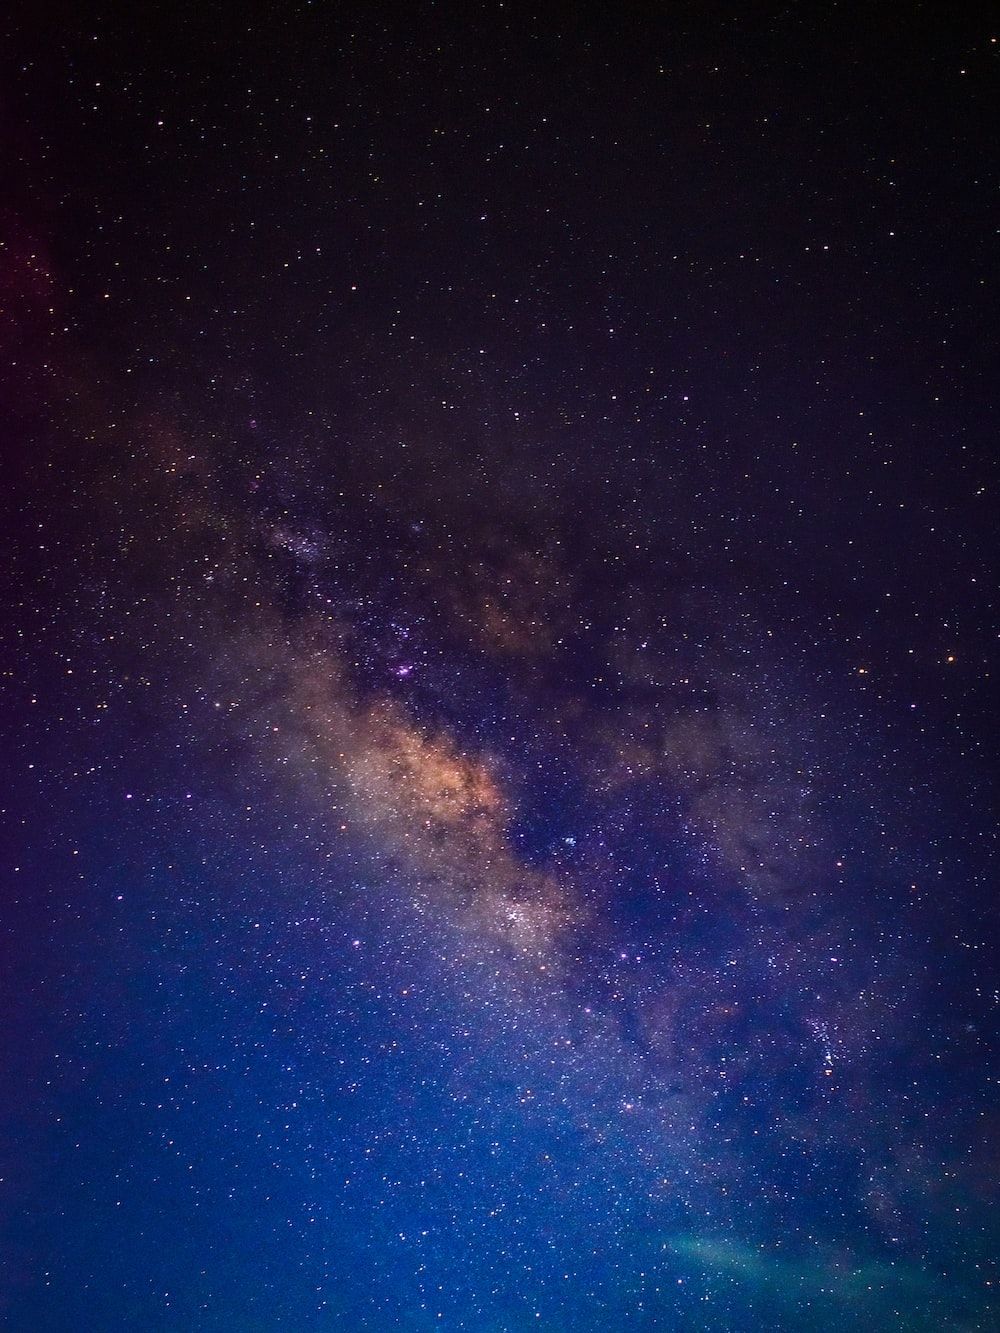  Sterne Hintergrundbild 1000x1333. Foto zum Thema Der Nachthimmel mit Sternen und Milch